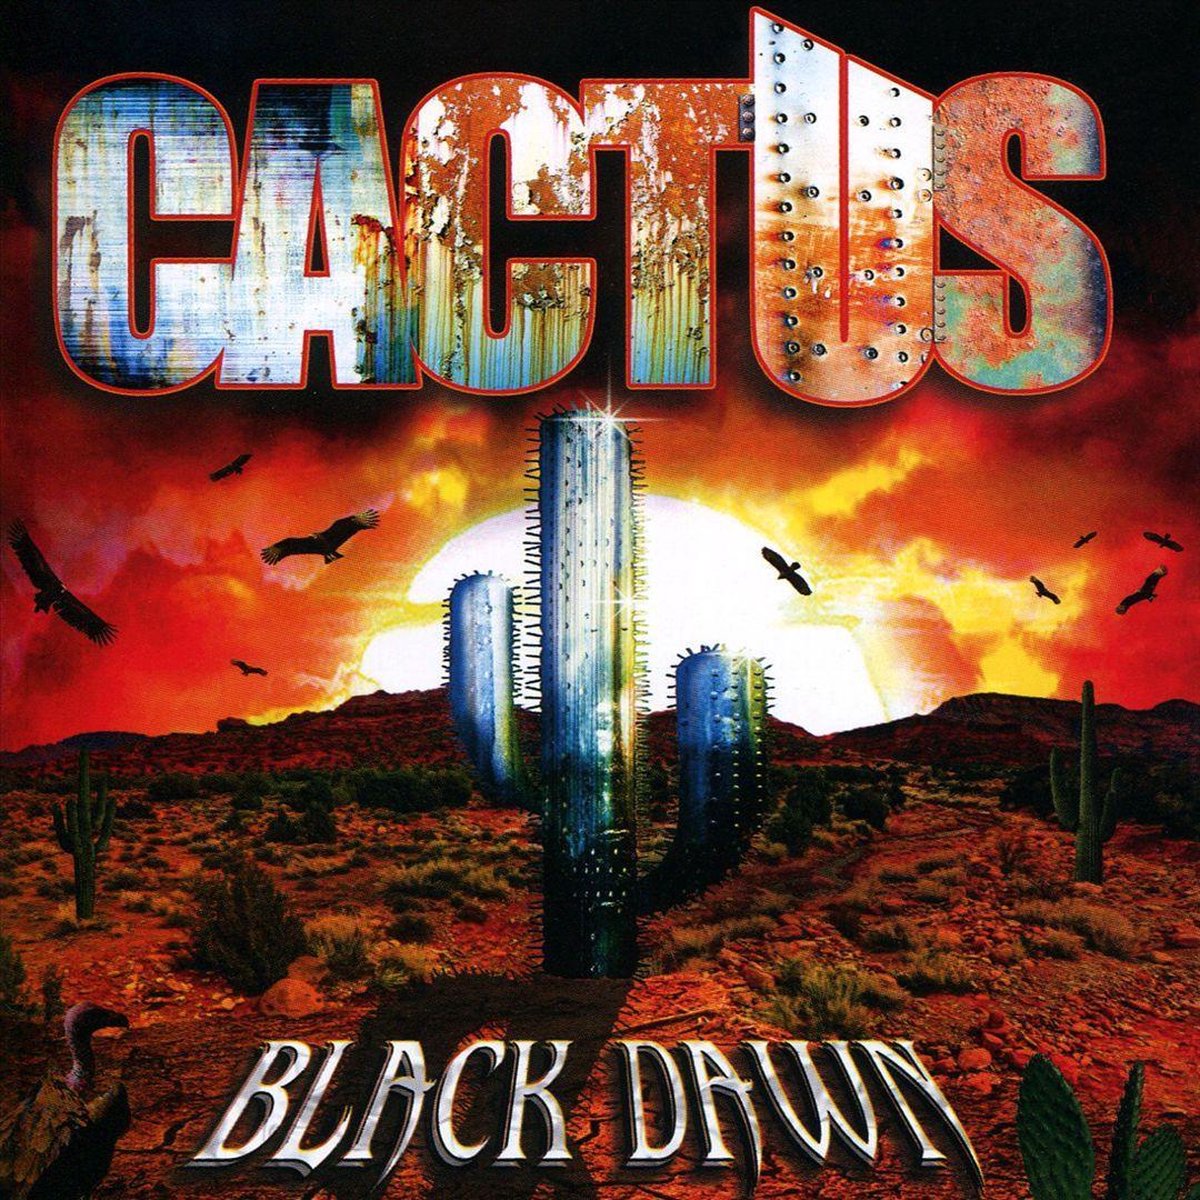 original cactus album cover